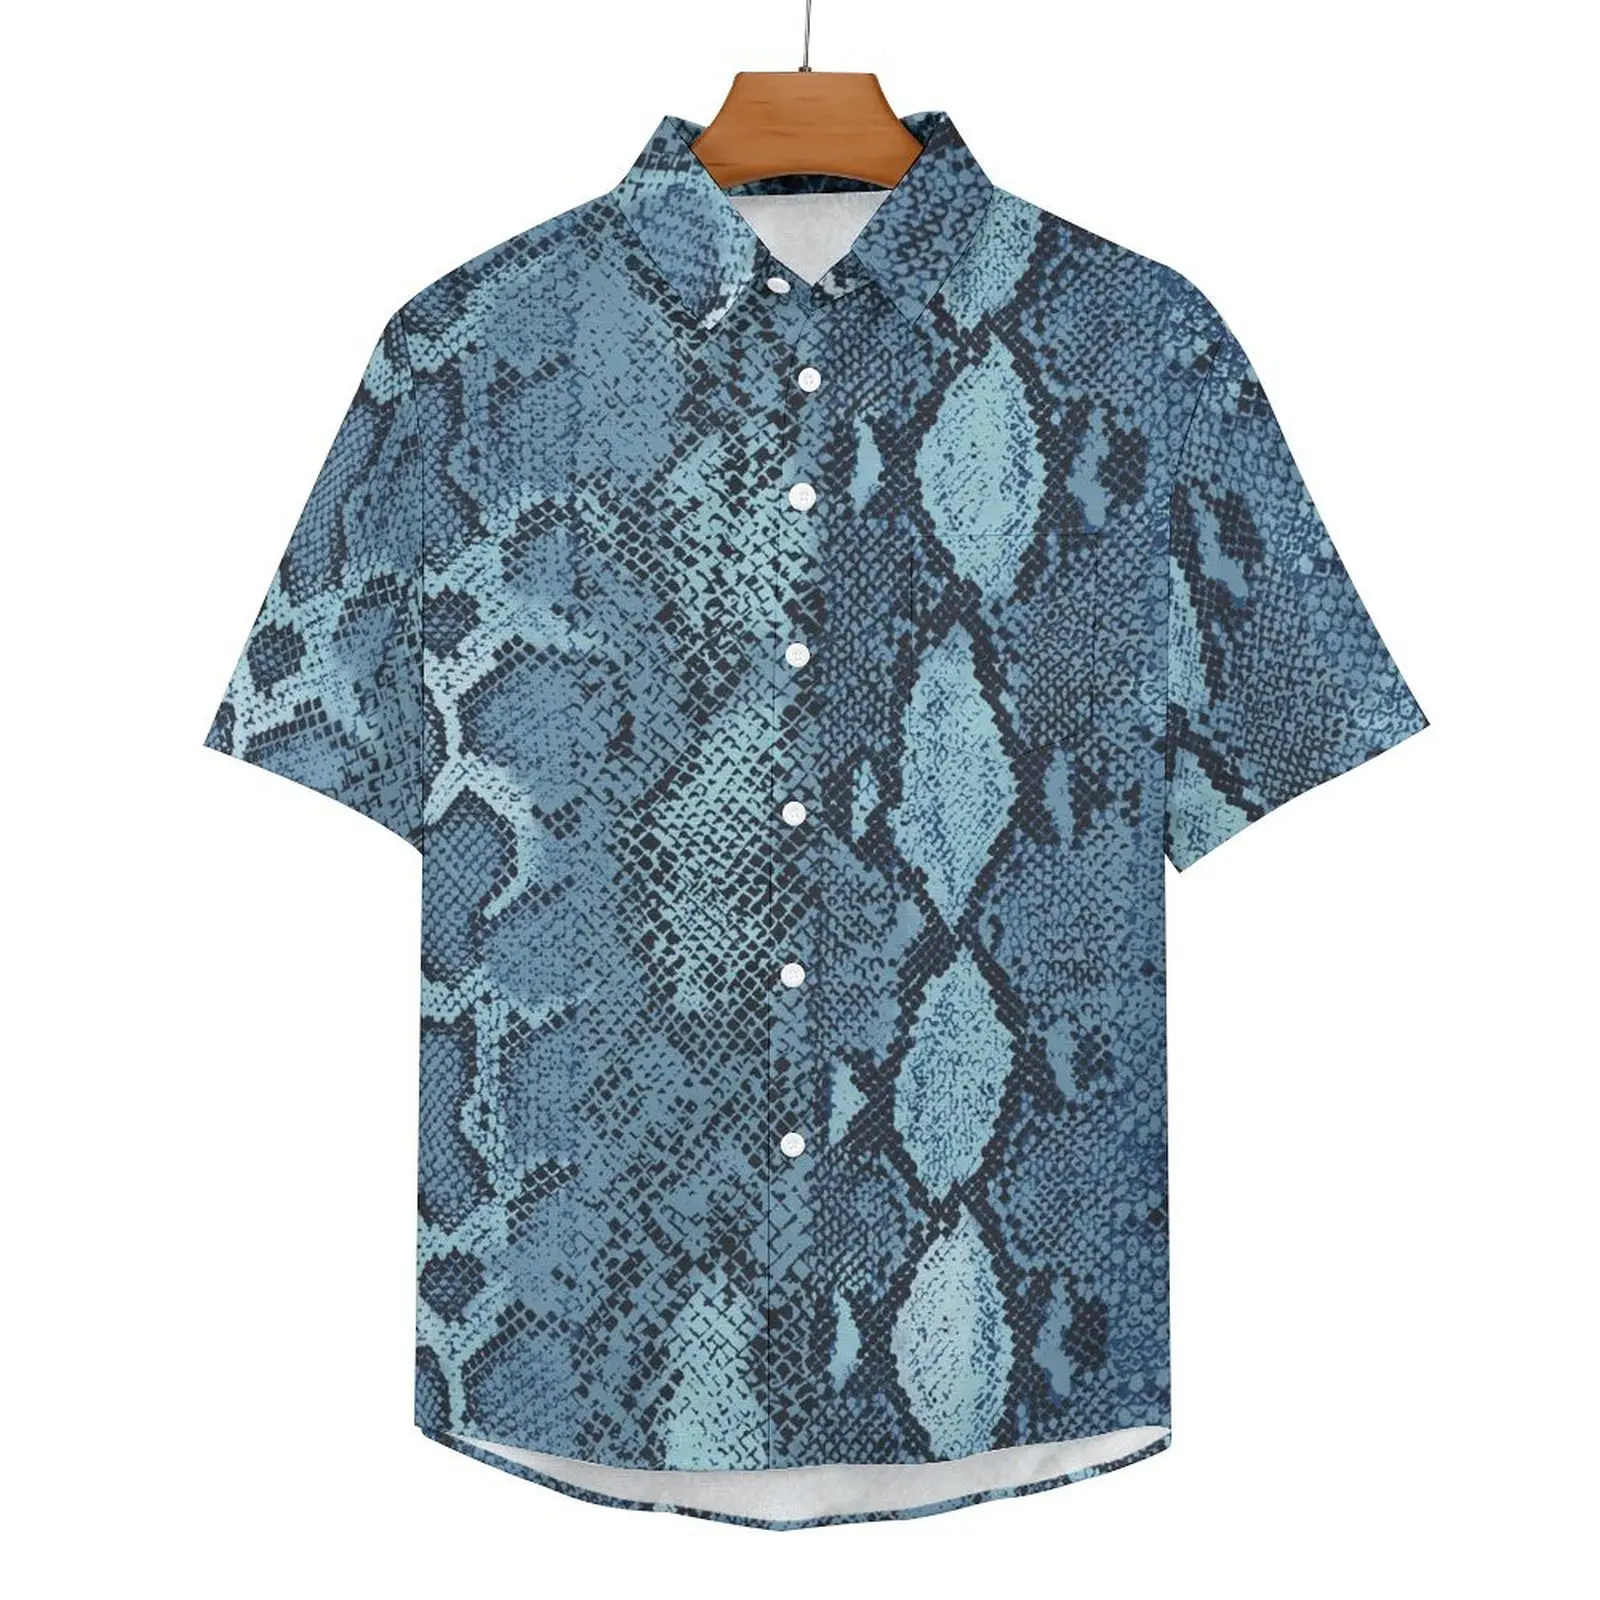 

Рубашка мужская с принтом змеиной кожи, Повседневная Синяя пляжная блузка оверсайз с коротким рукавом, с графическим принтом, в гавайском стиле, подарок